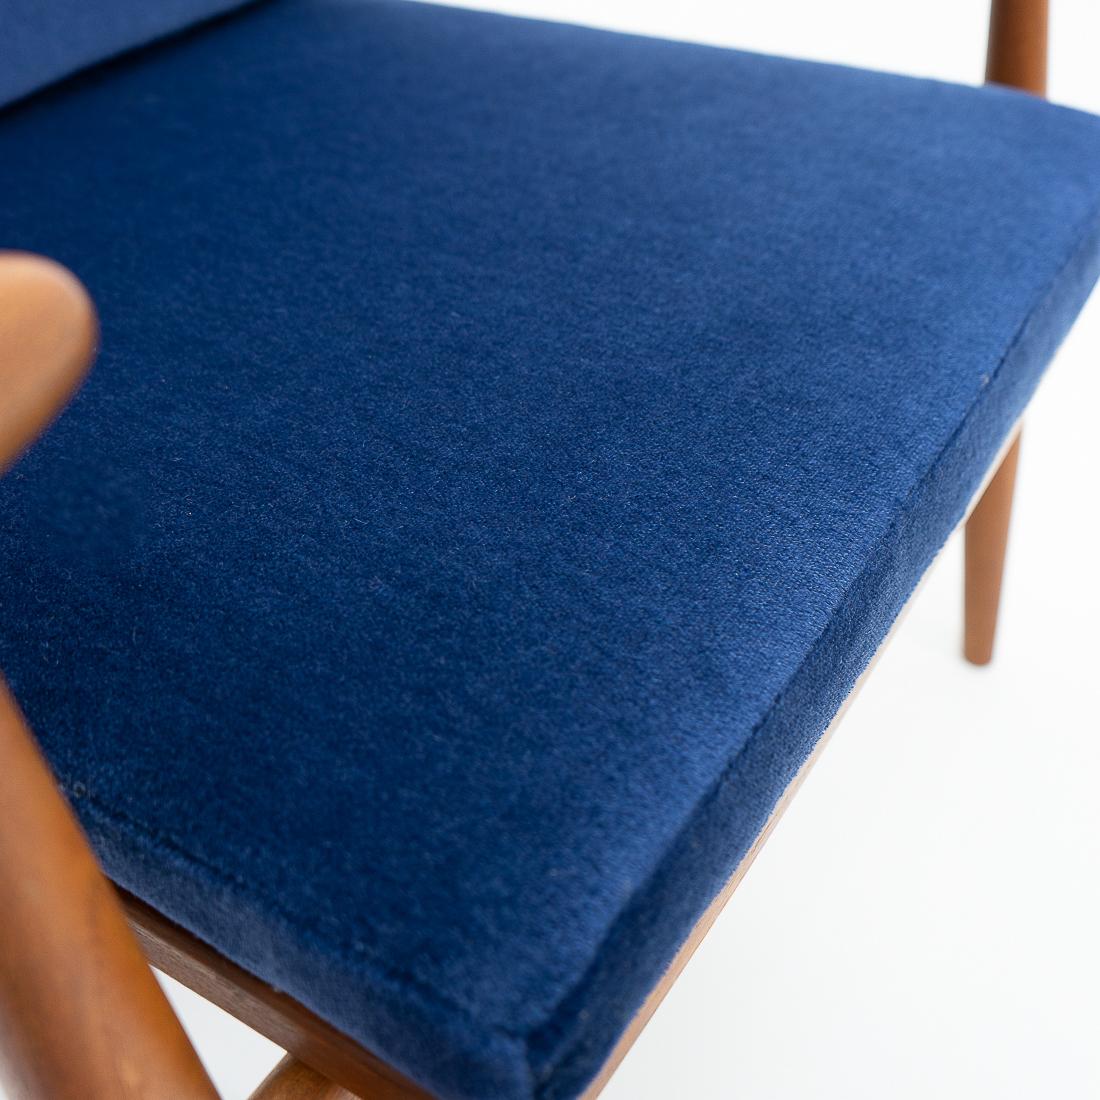 1950s Danish Design Classic Finn Juhl “Spade” Armchair, Upholstered in Mohair For Sale 2